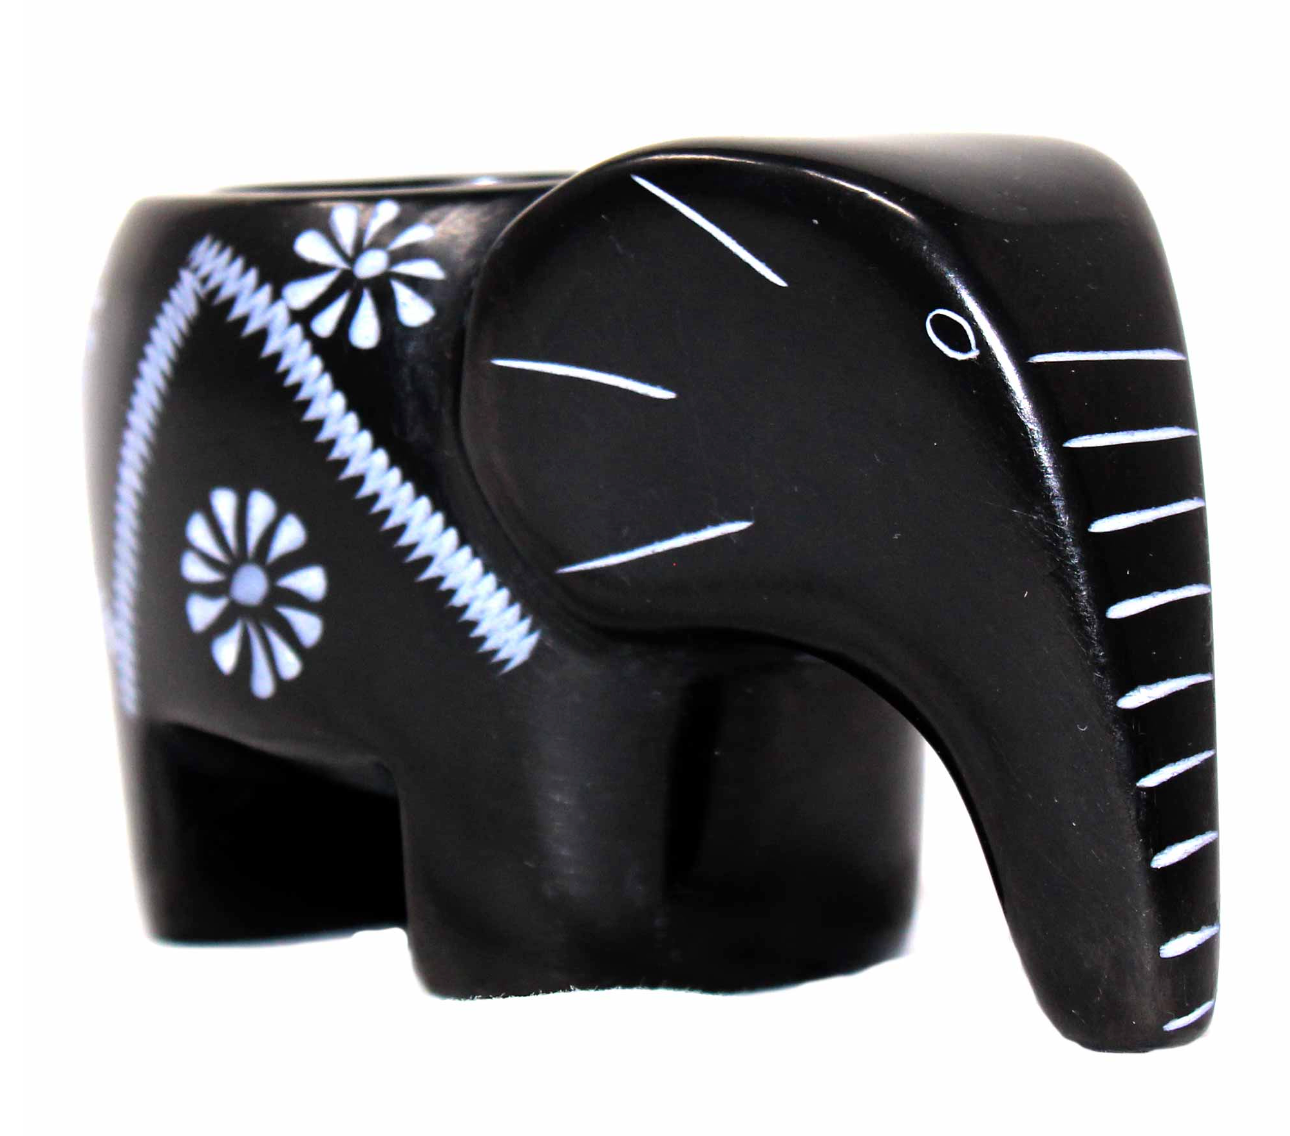 Elephant Soapstone Tealight Holder